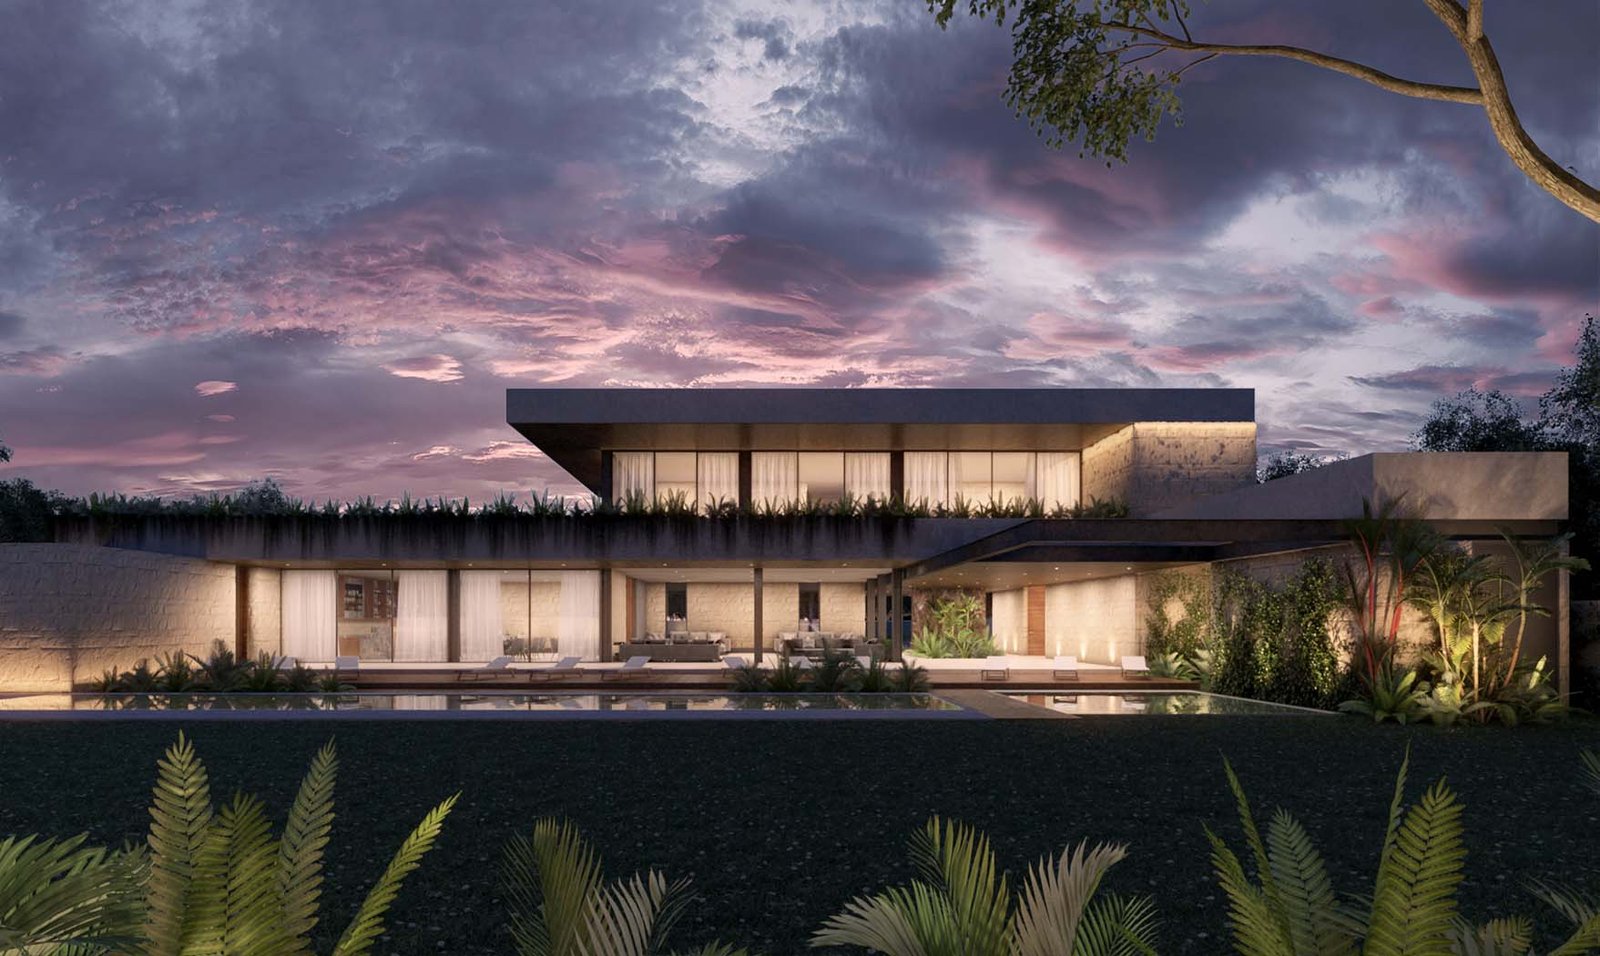 Terrenos residenciales merida yucatan Mistika desarrollo residencial con alberca